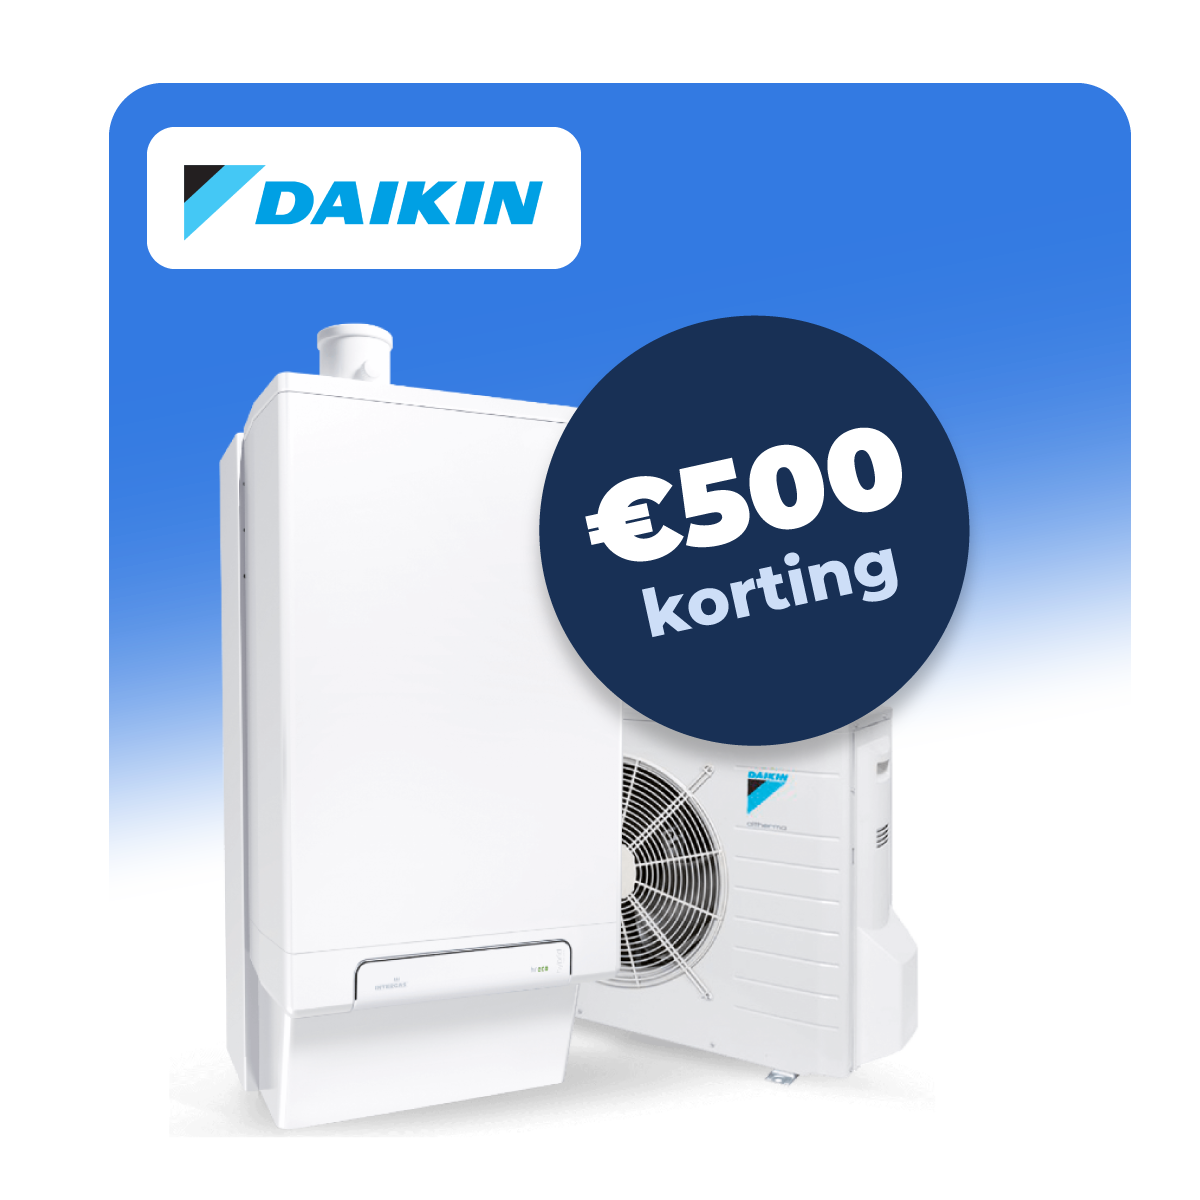 Daikin-500korting.png